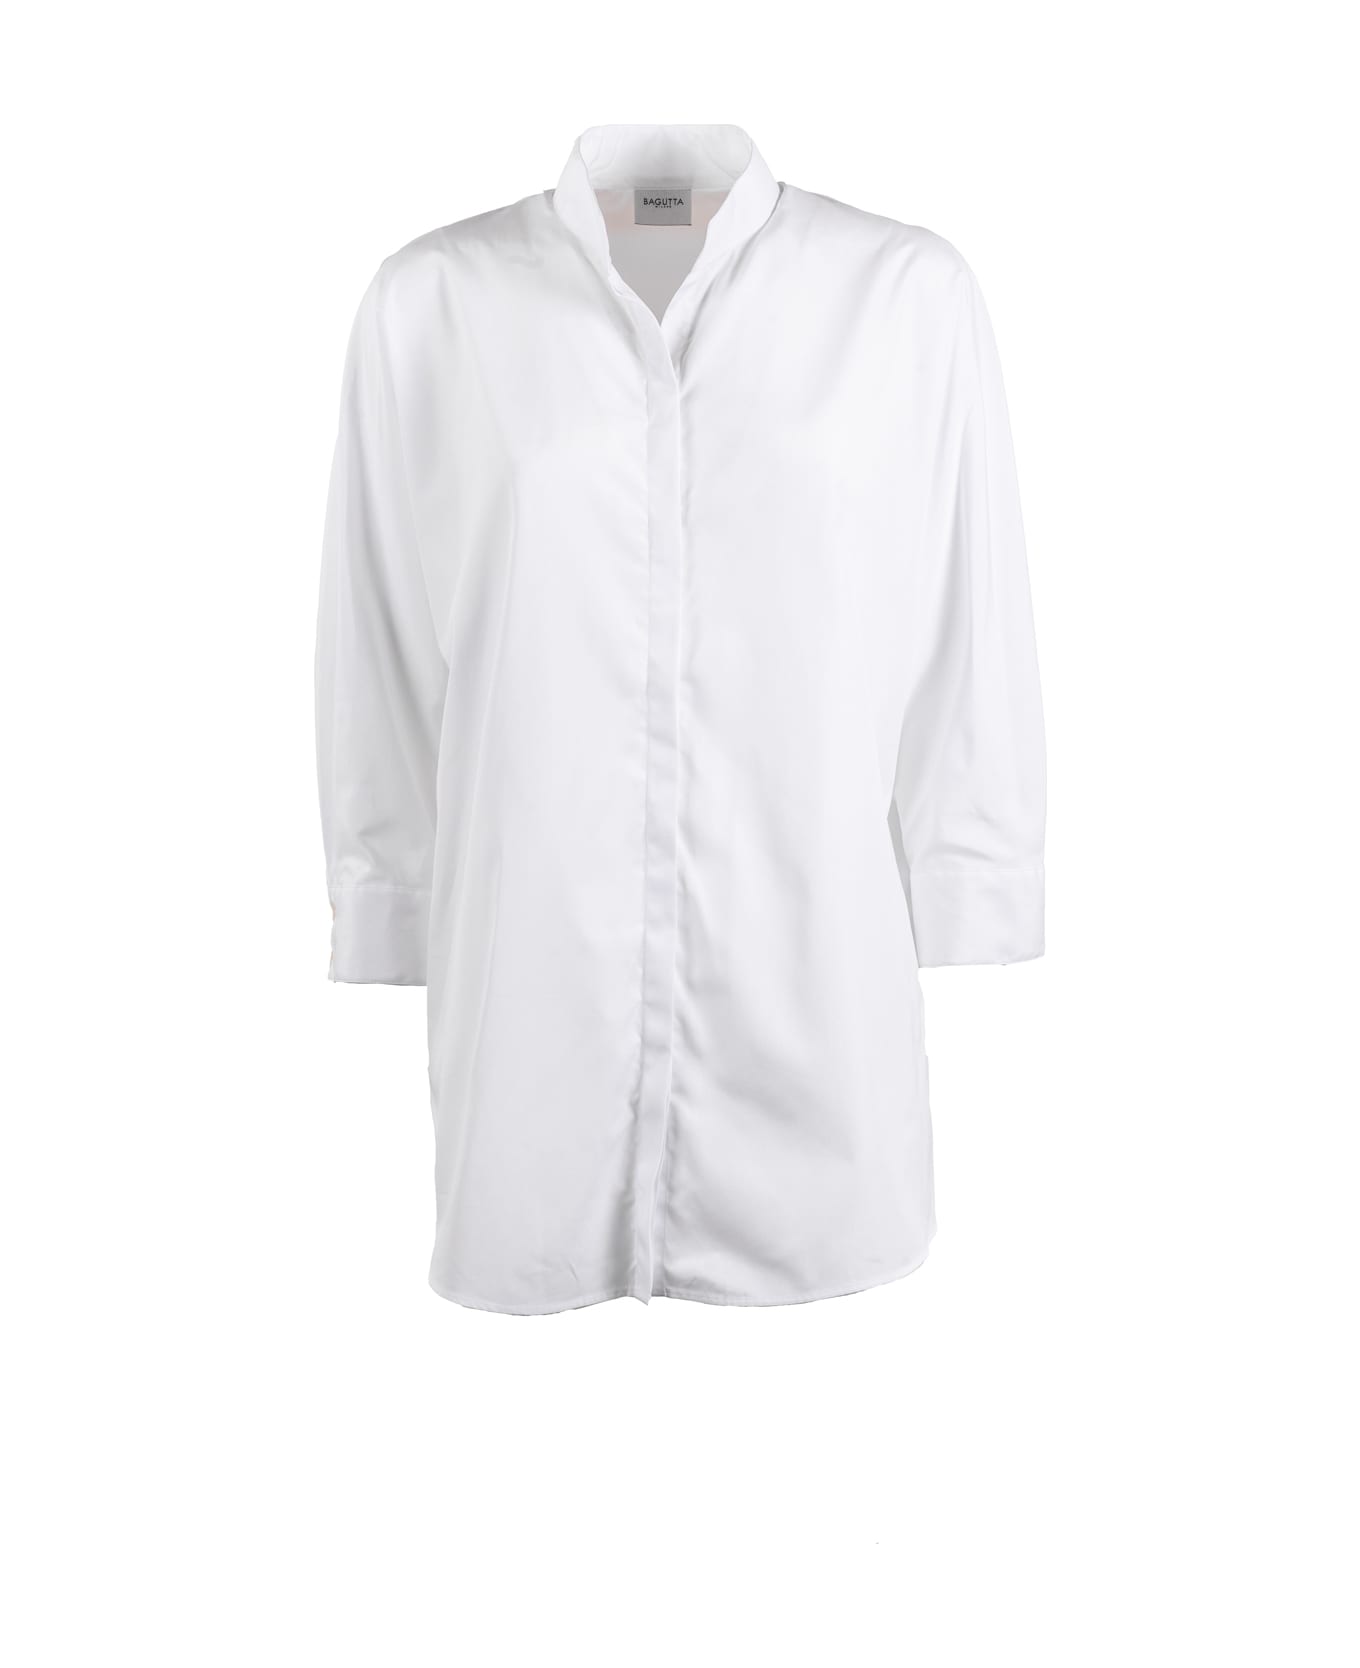 Bagutta Shirts White - White シャツ